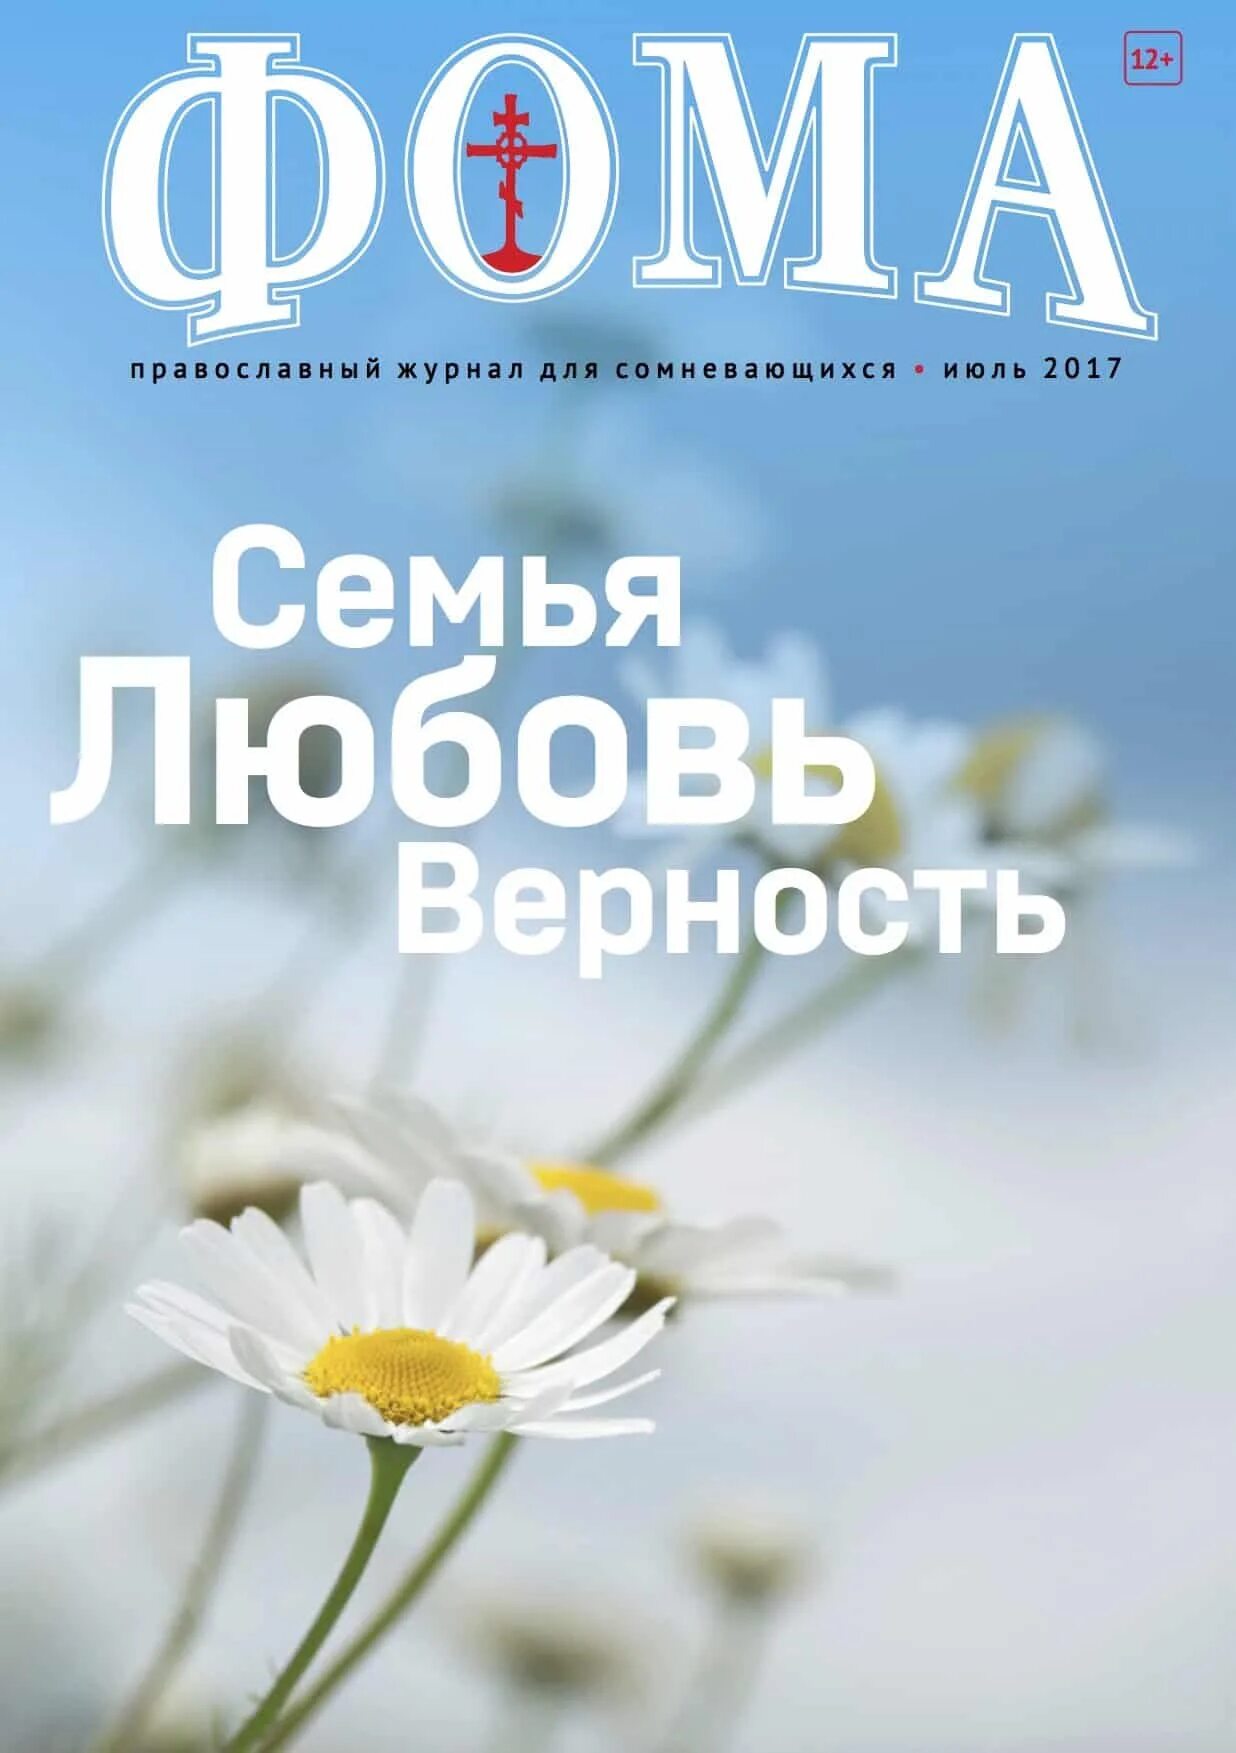 Христианские журналы. Сайт православного журнала